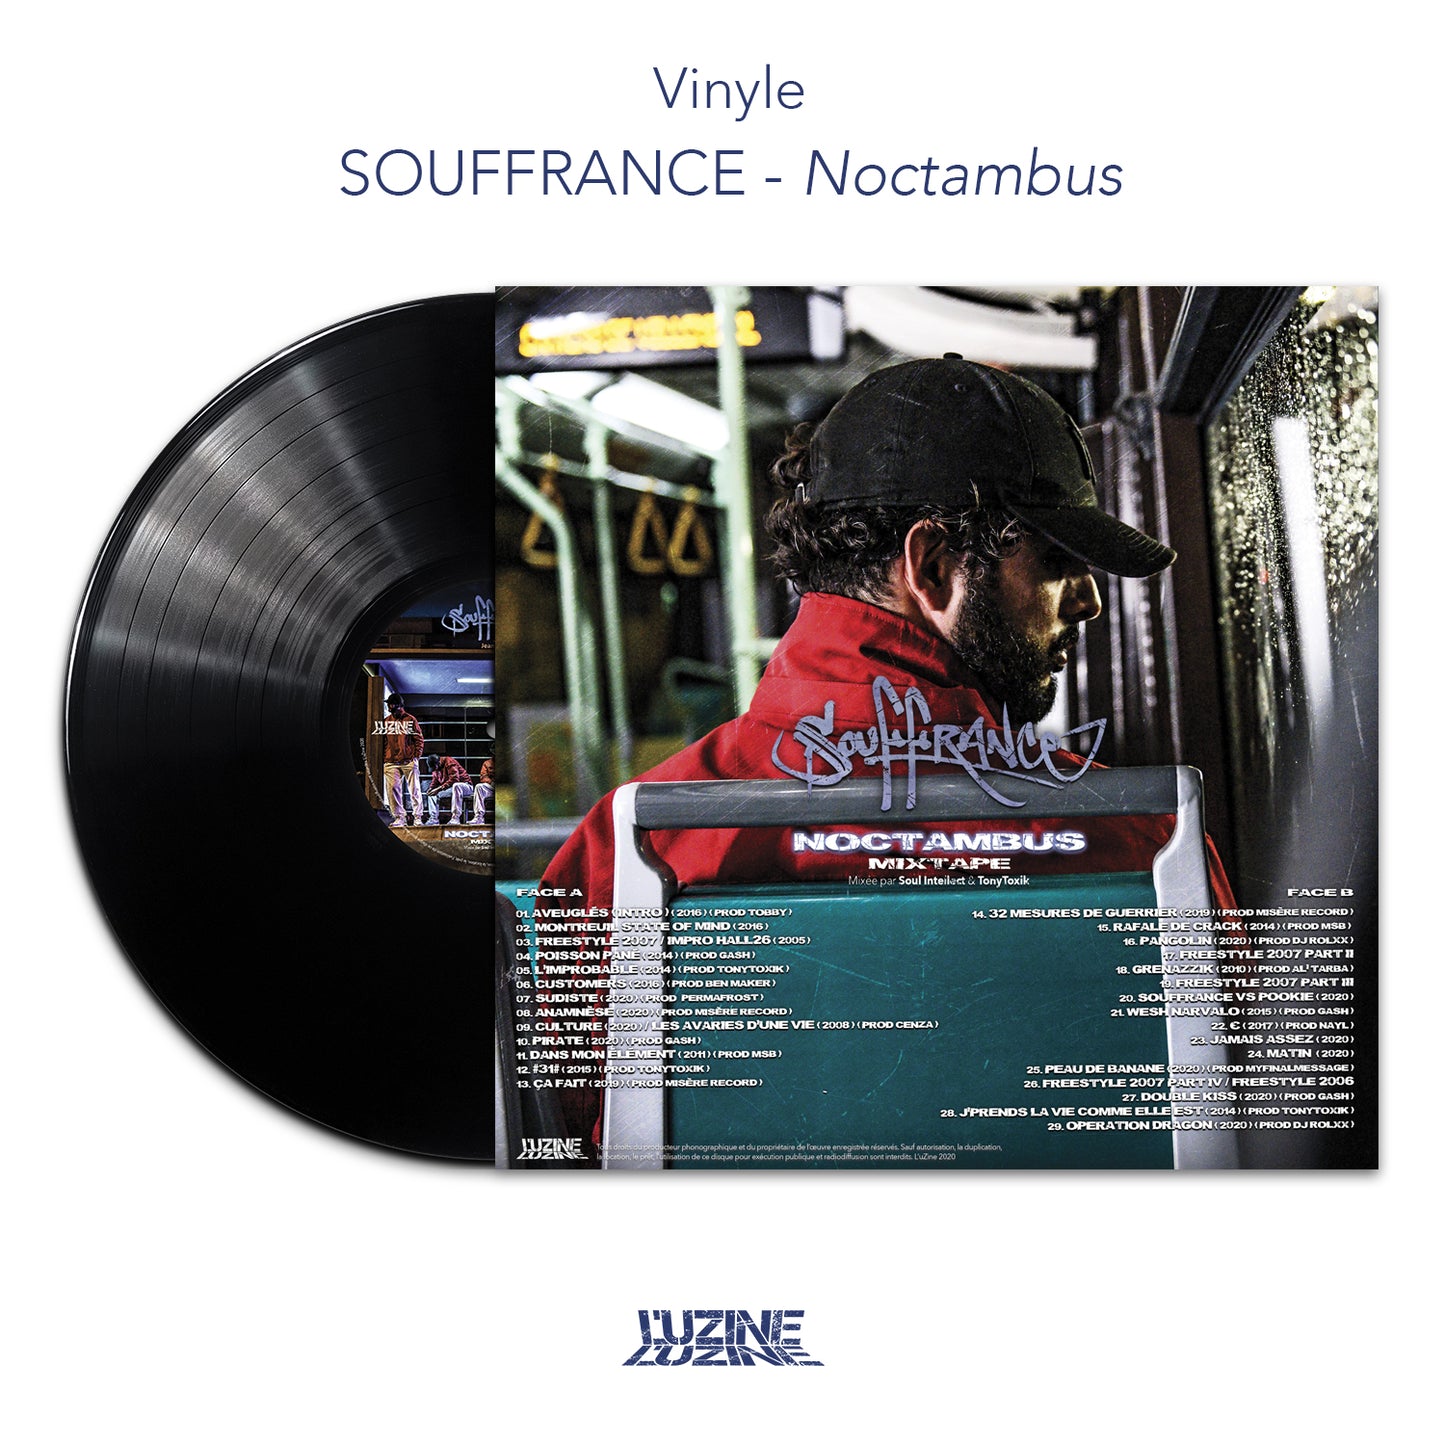 Vinyle Souffrance "Noctambus"